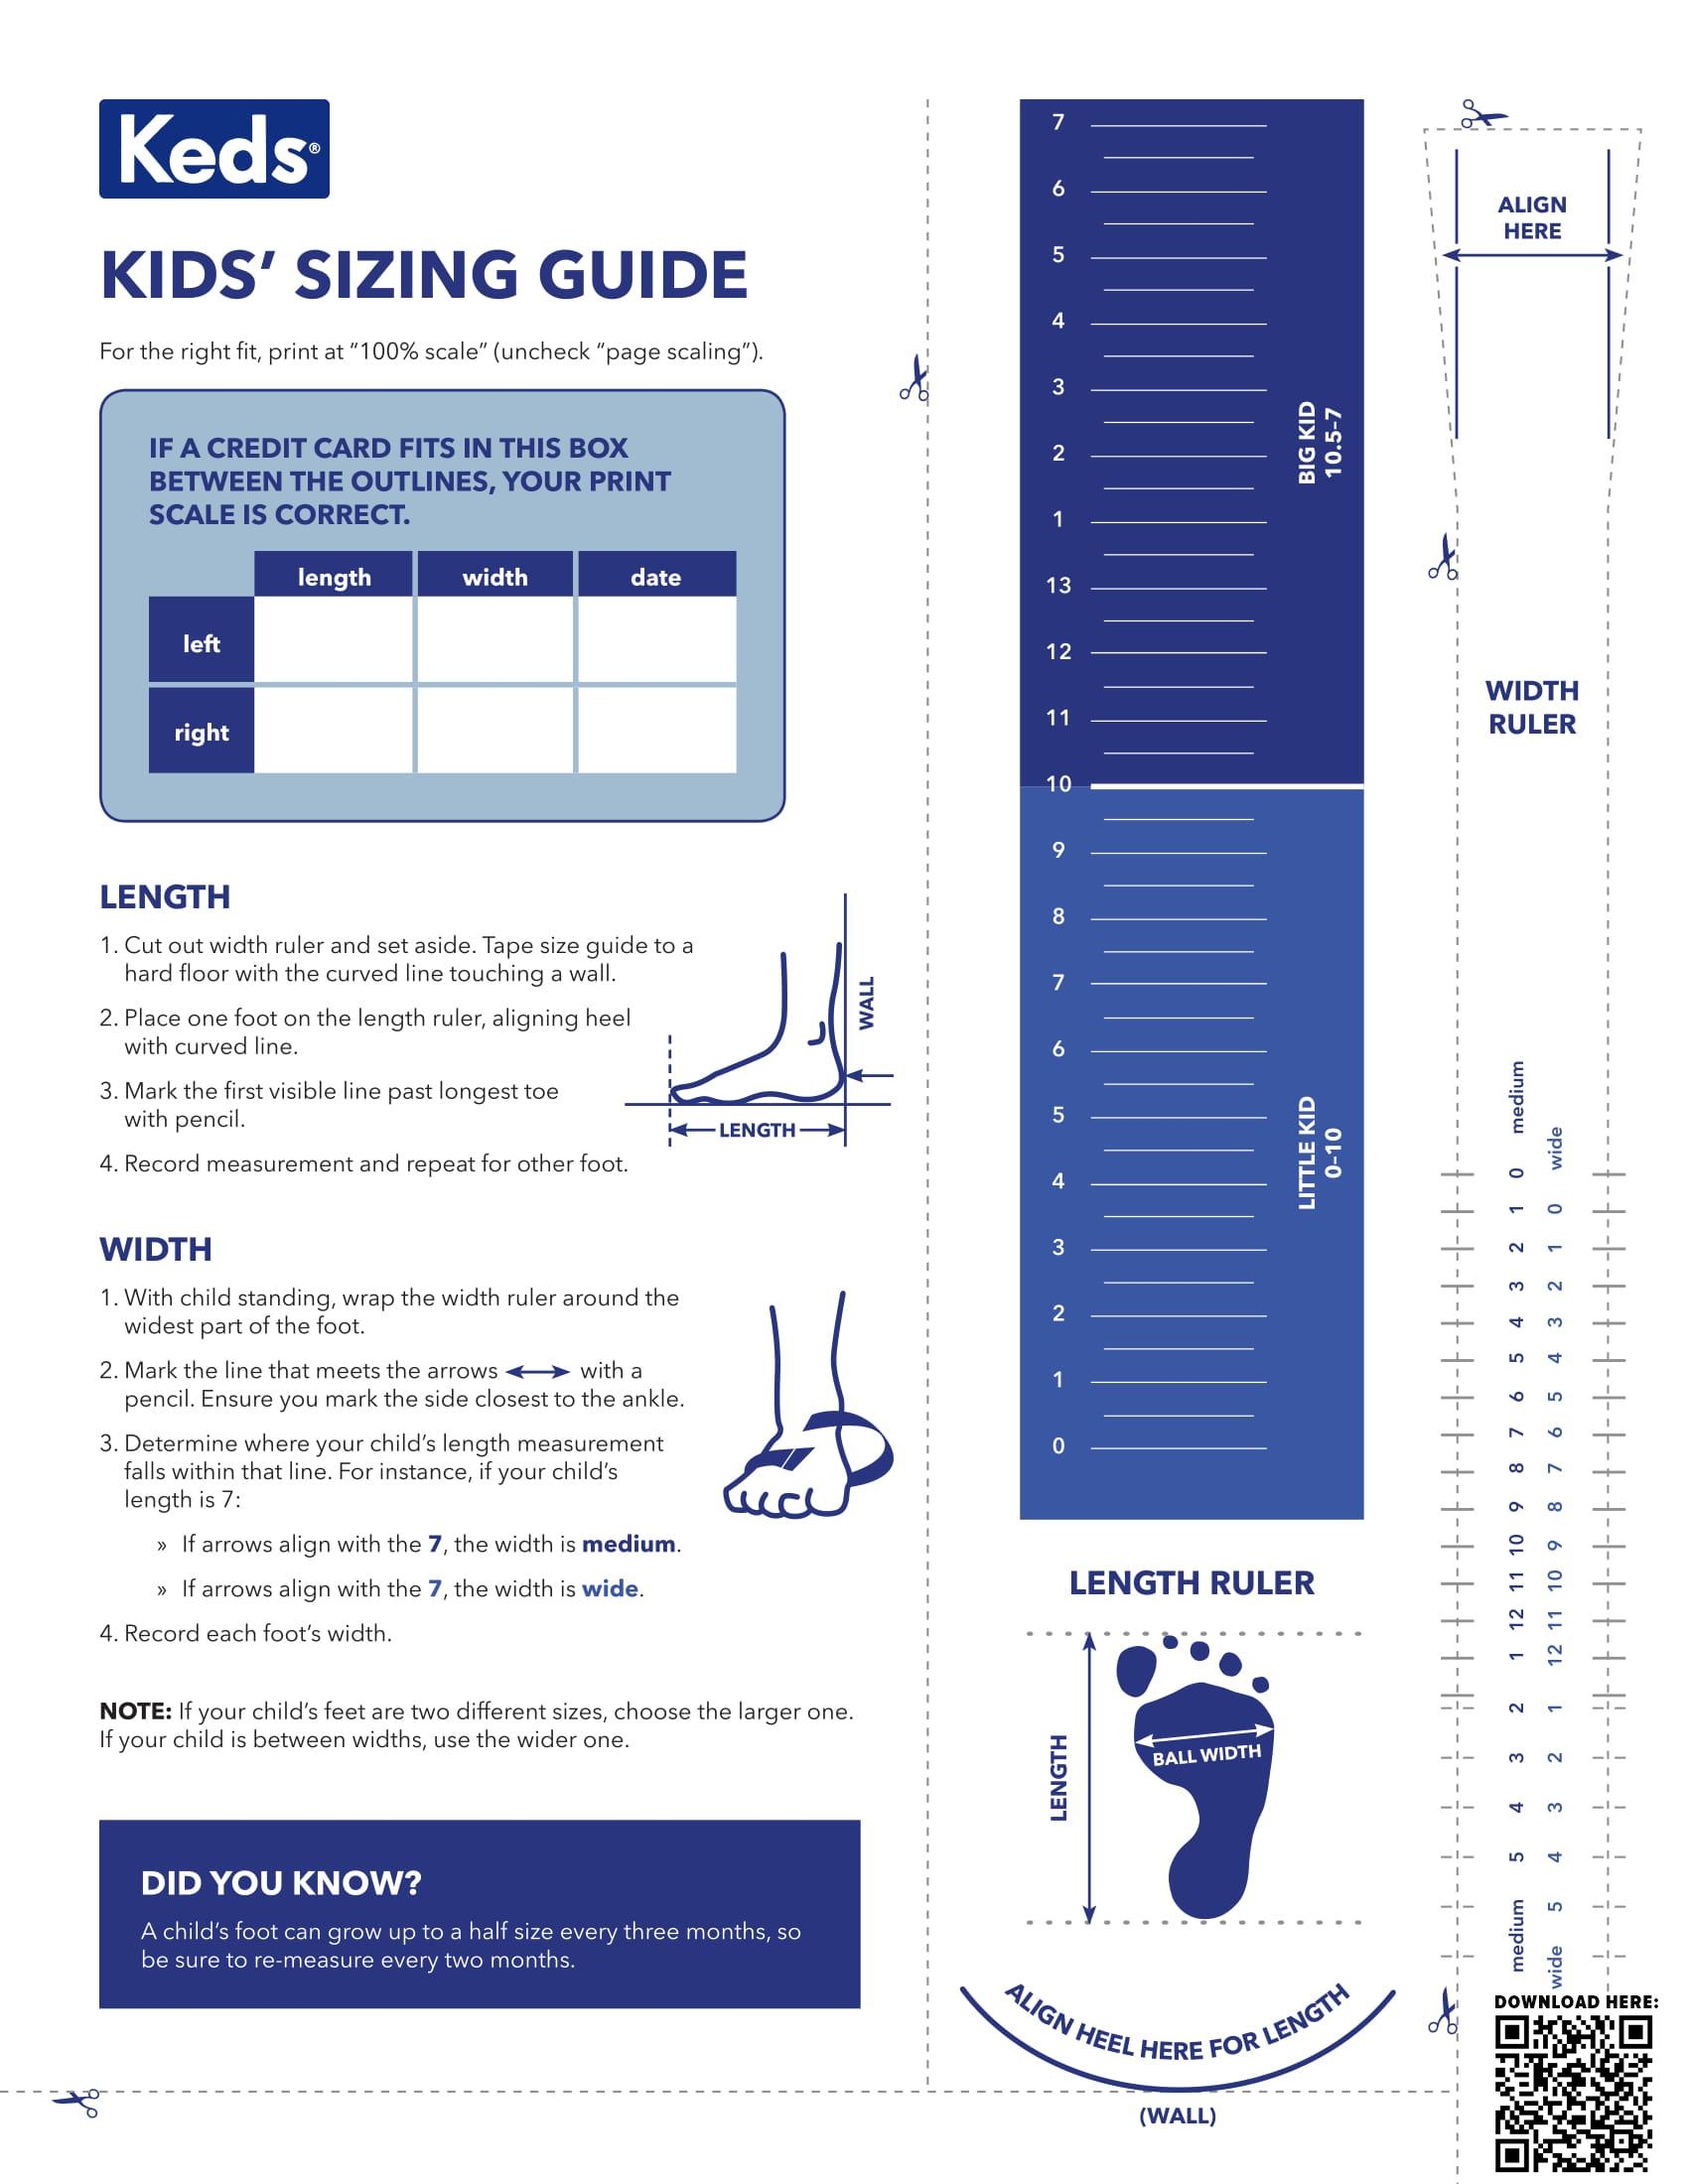 8 Photos Keds Kids Size Chart And Description - Alqu Blog